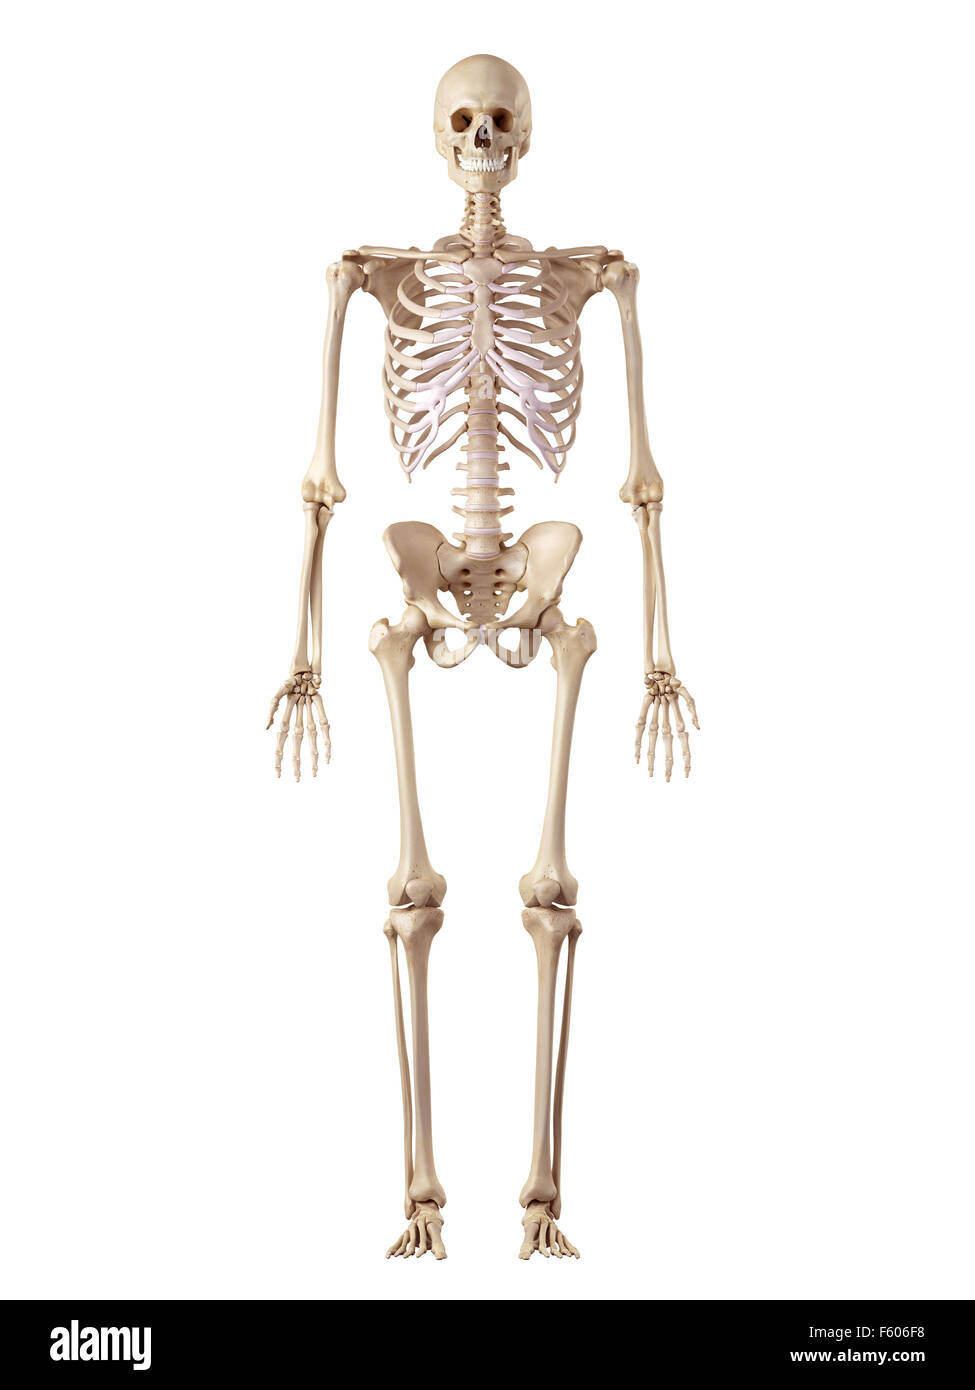 Medical precisa ilustración del esqueleto humano Foto de stock